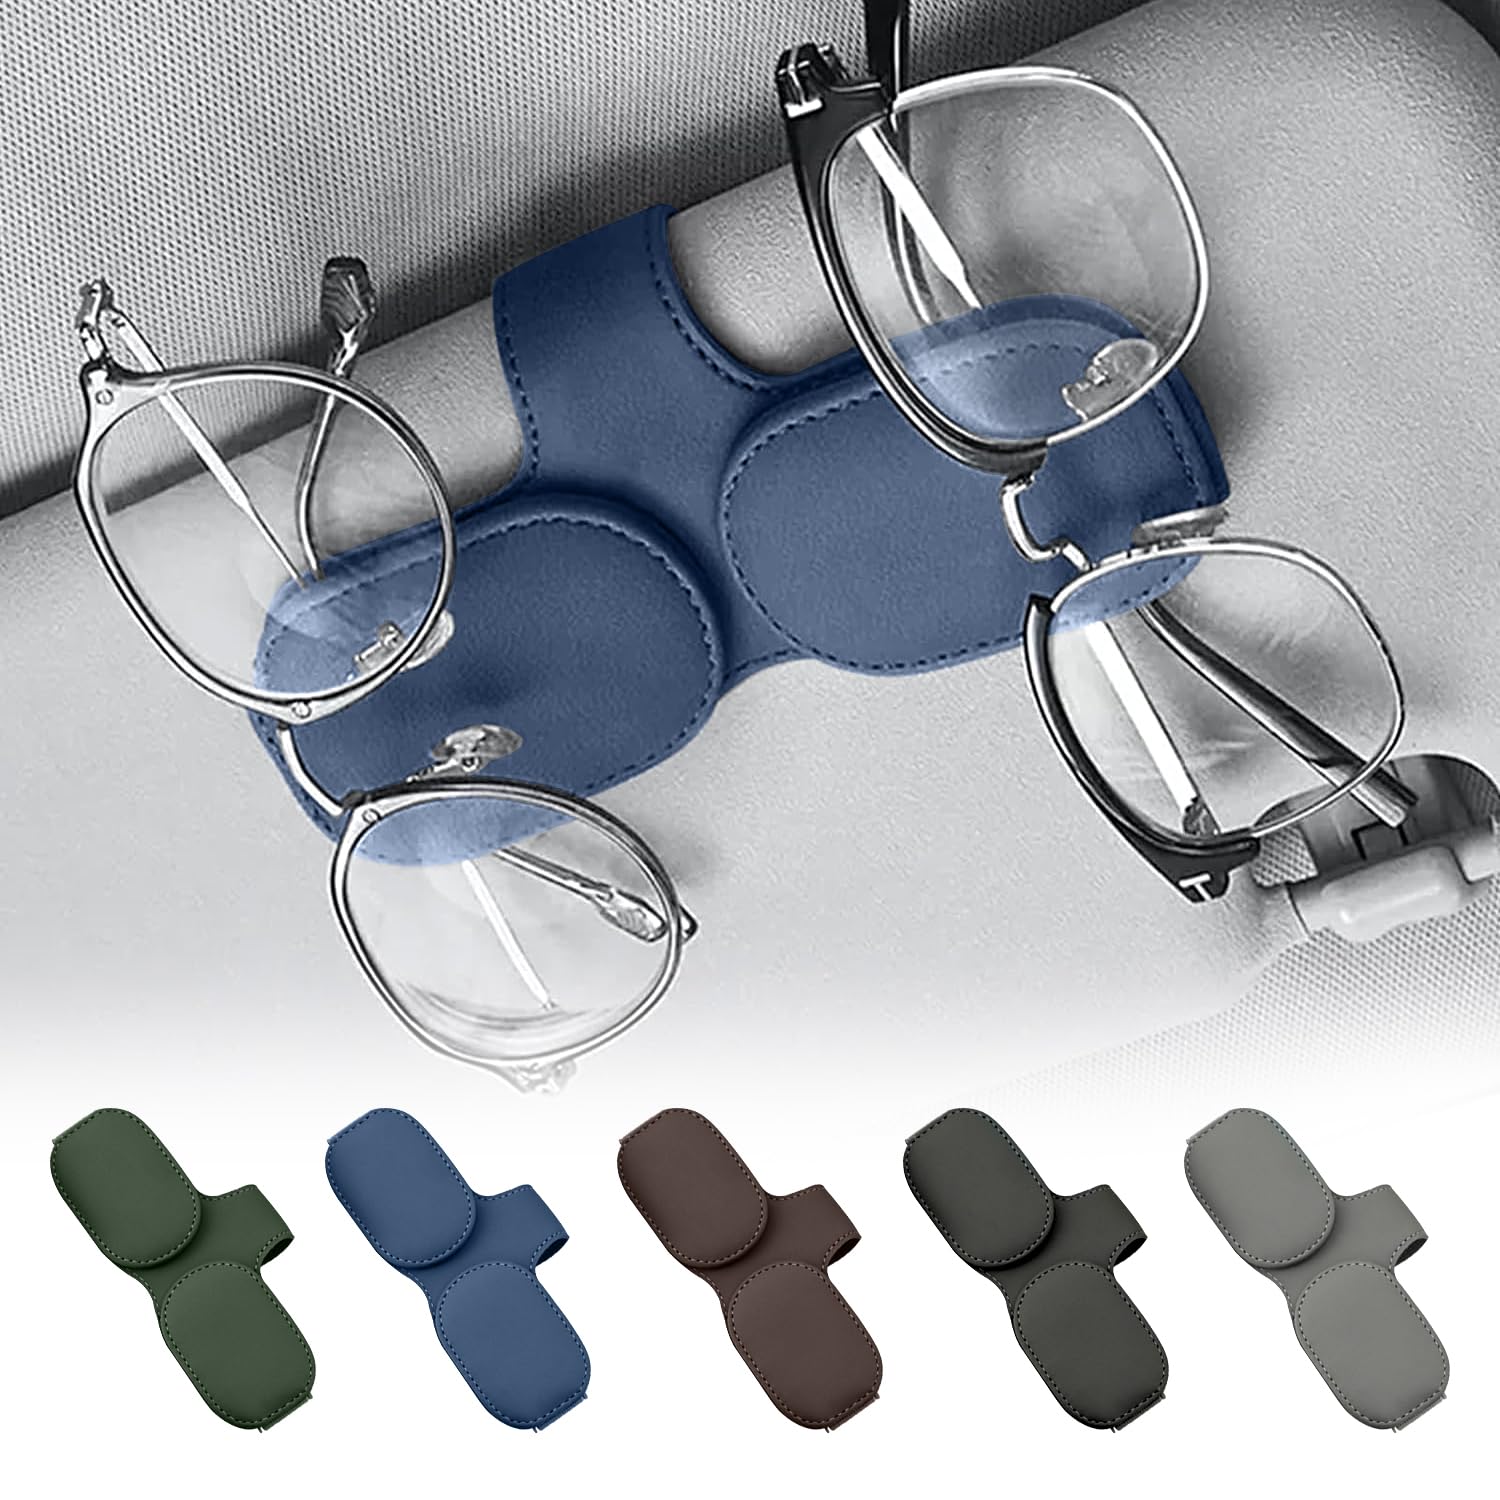 Brillenhalter für Auto,Doppelschichtiger Brillenhalter für Auto Sonnenblende,Leder Brillenhalter für Auto,Brillenhalter für Auto Sonnenblende,Sonnenbrillen Halterung für Auto Visier Zubehör (Blau) von Lonimia